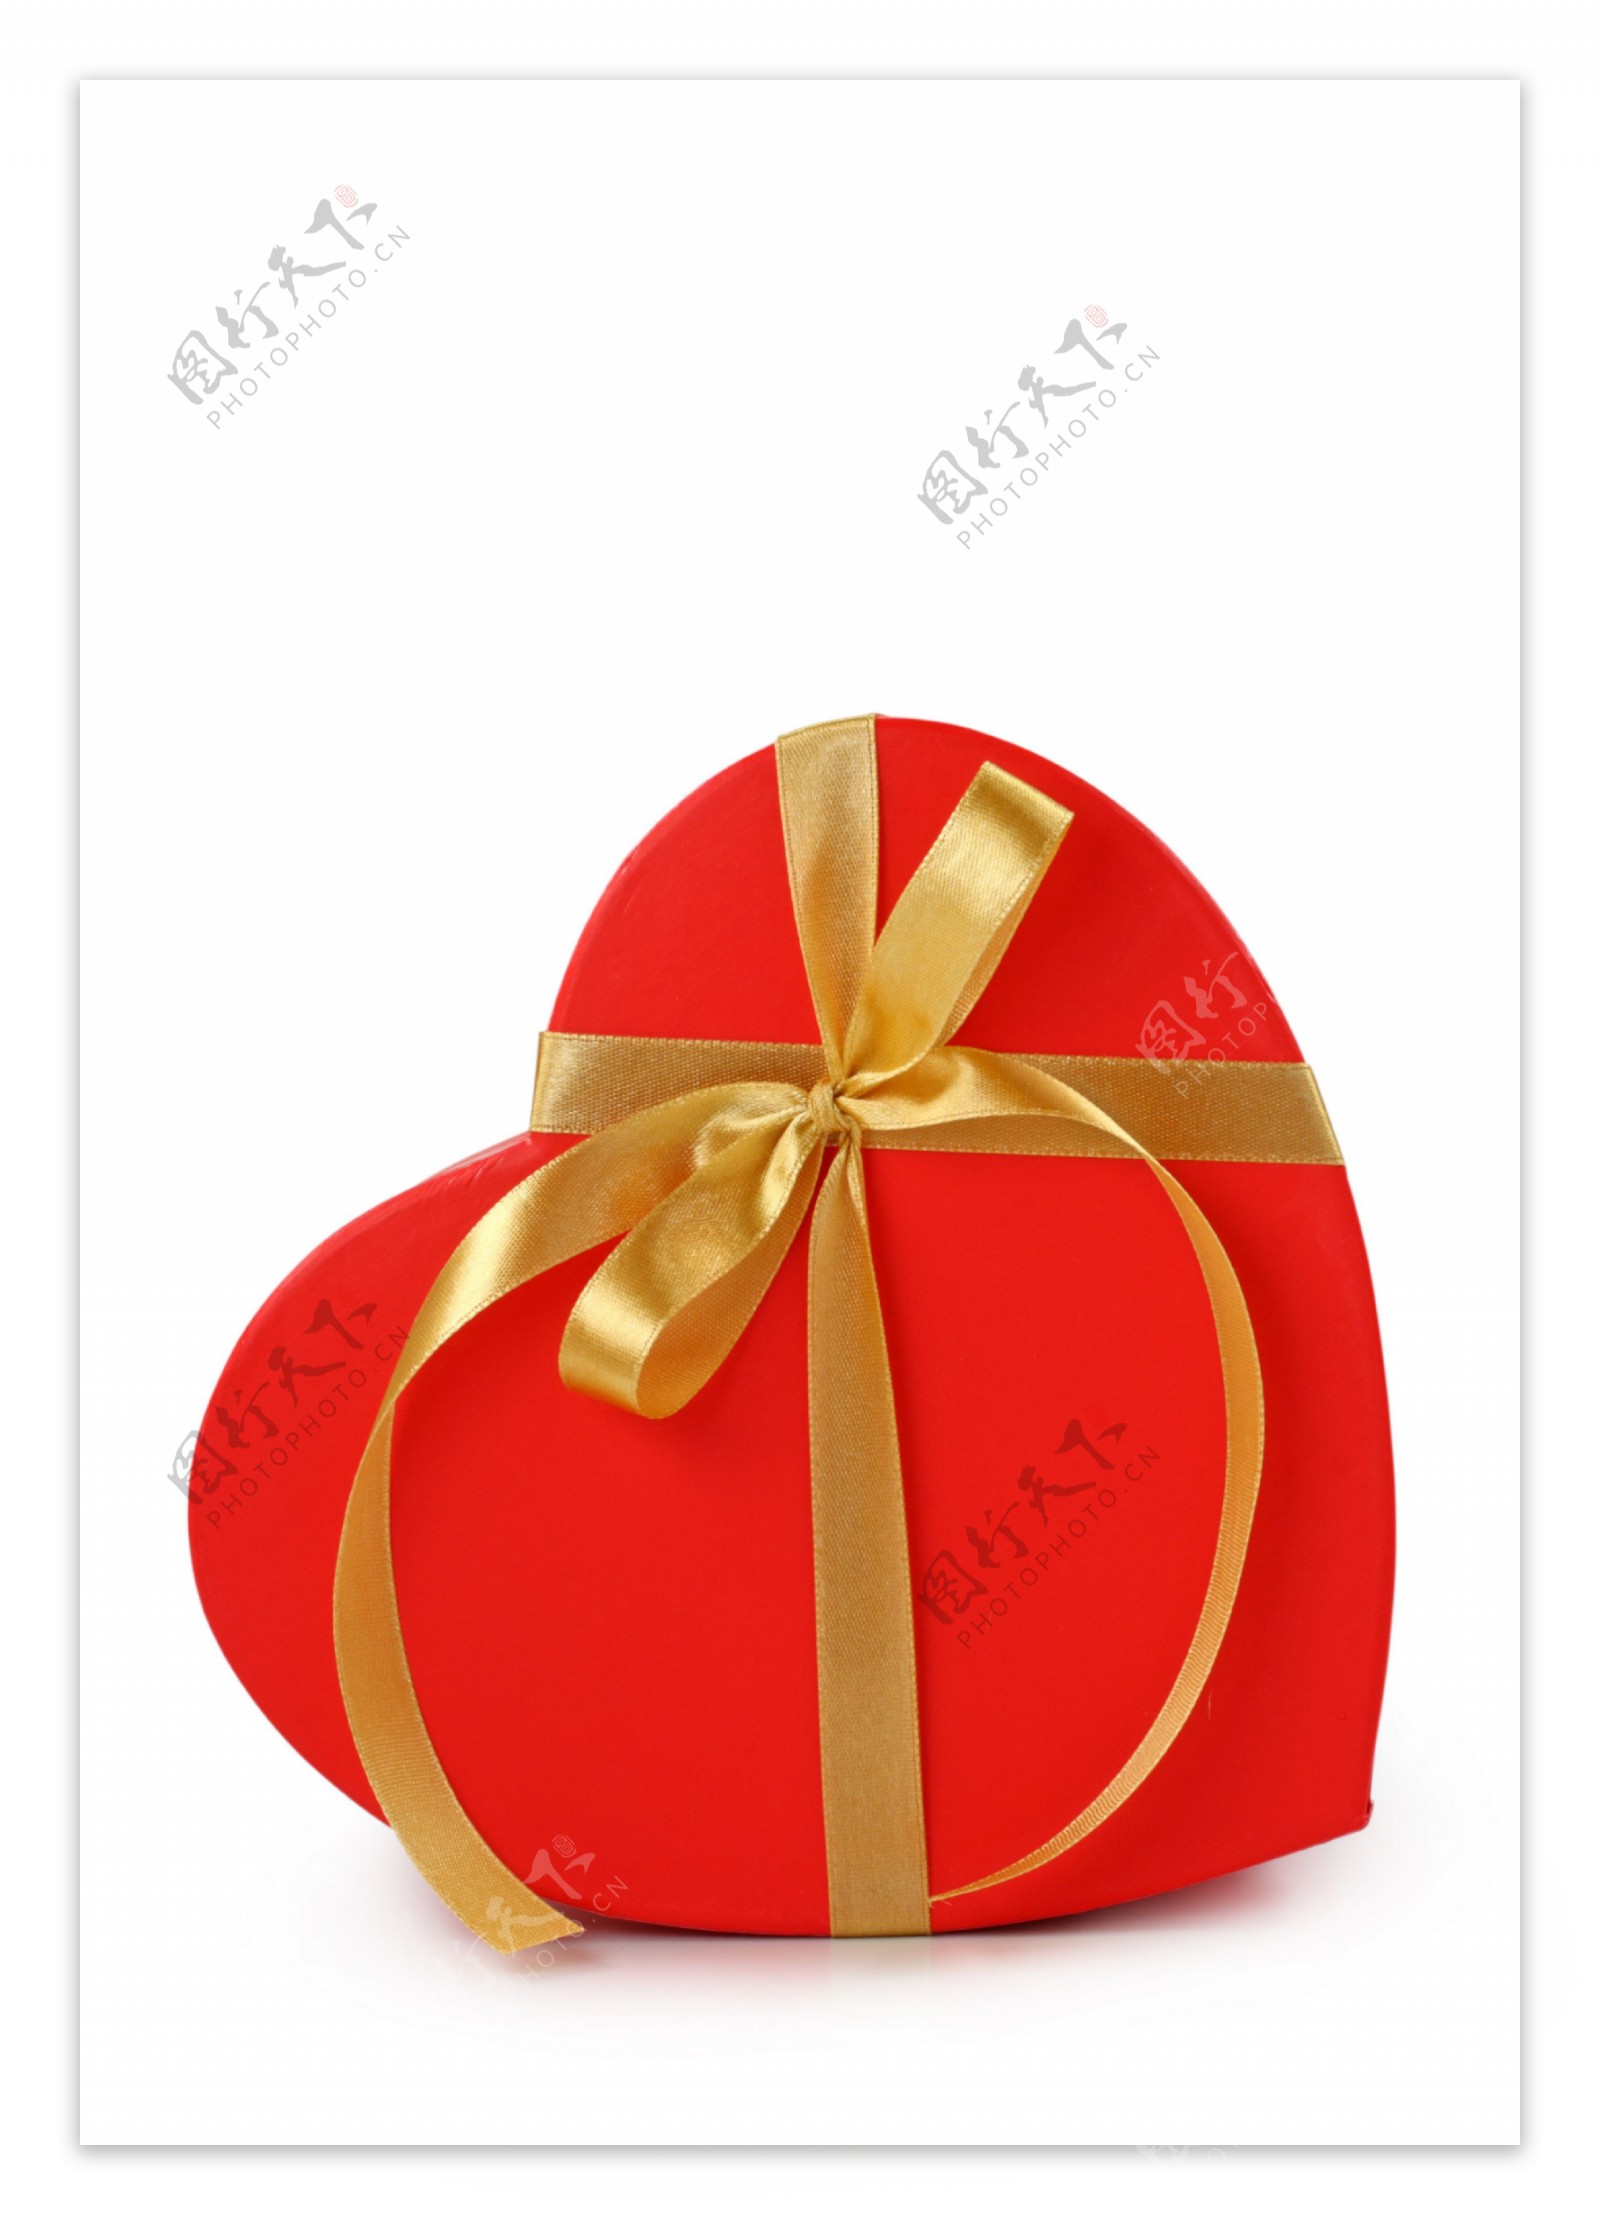 红色心形礼物盒图片